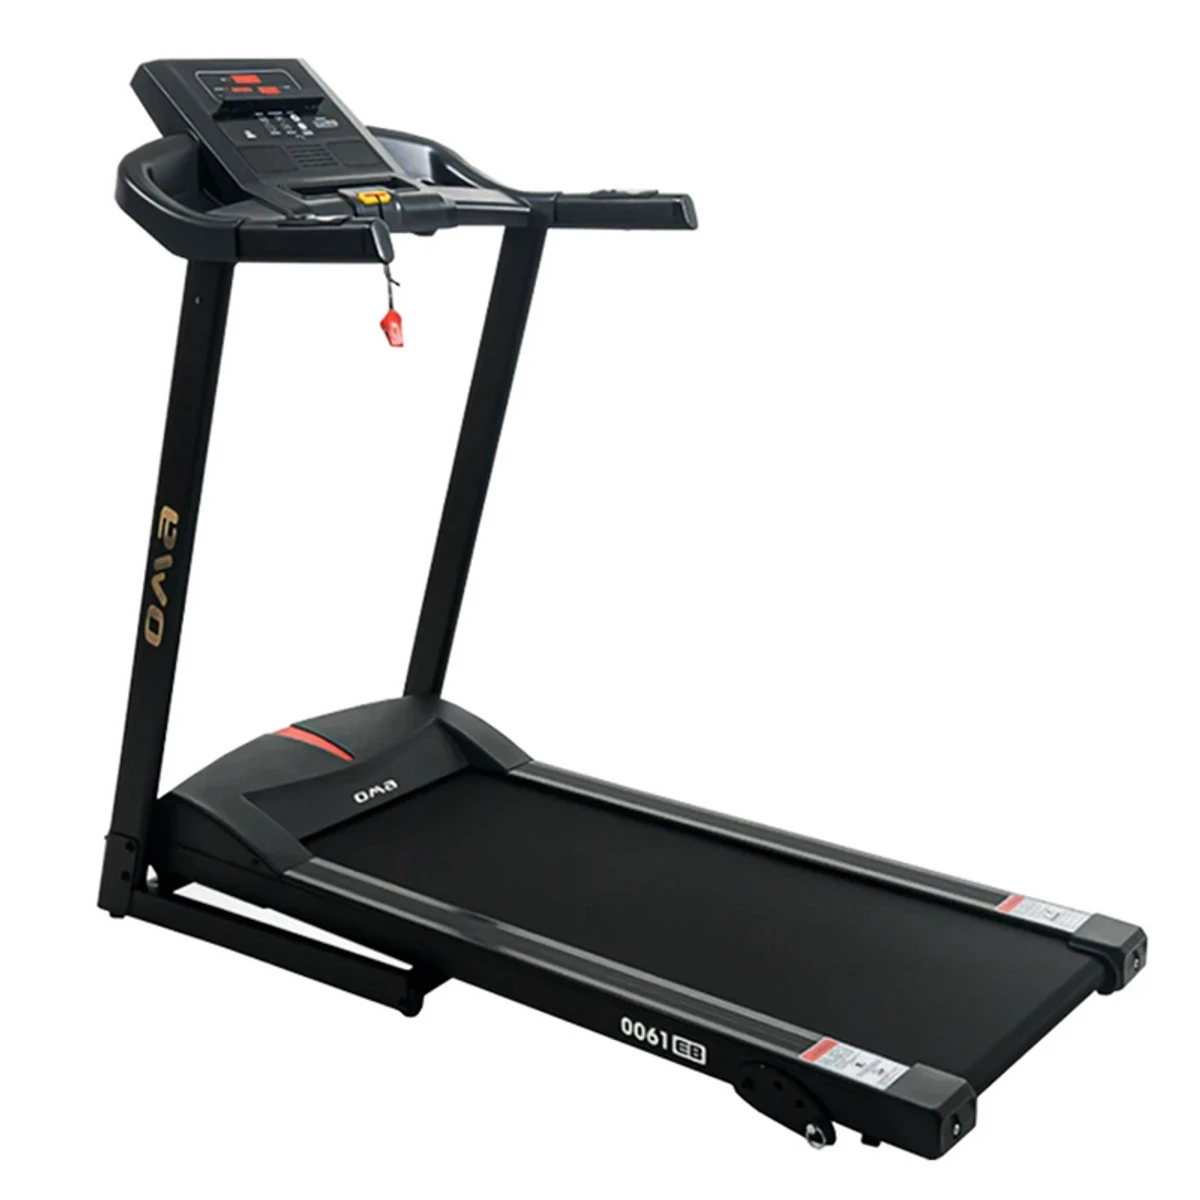 Oma – 0061EB Motorized Treadmill